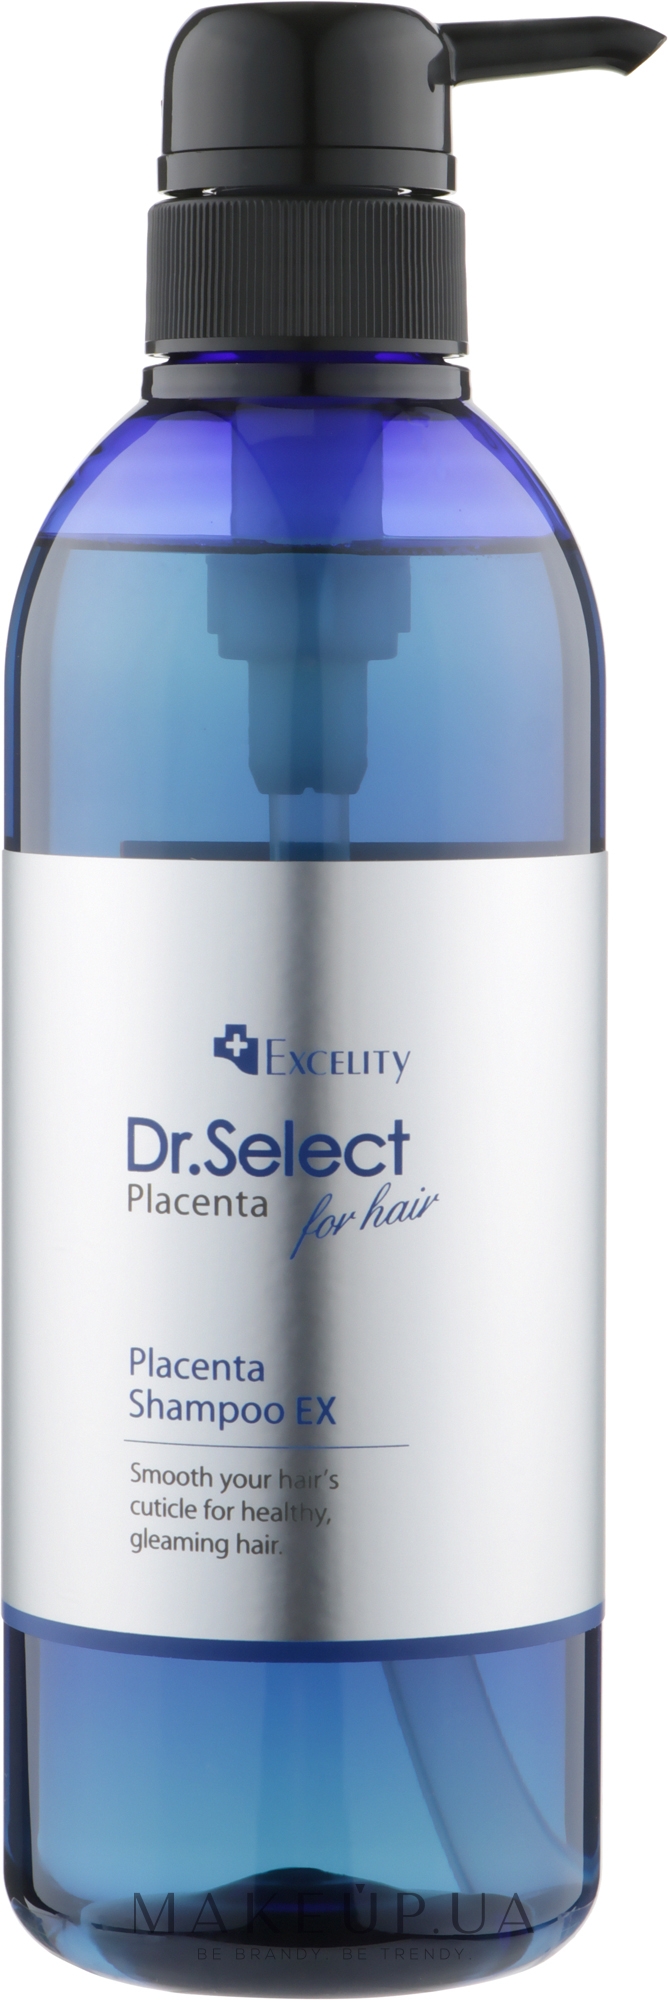 Концентрований омолоджувальний плацентарний шампунь для волосся - Dr. Select Excelity Placenta Shampoo EX — фото 500ml